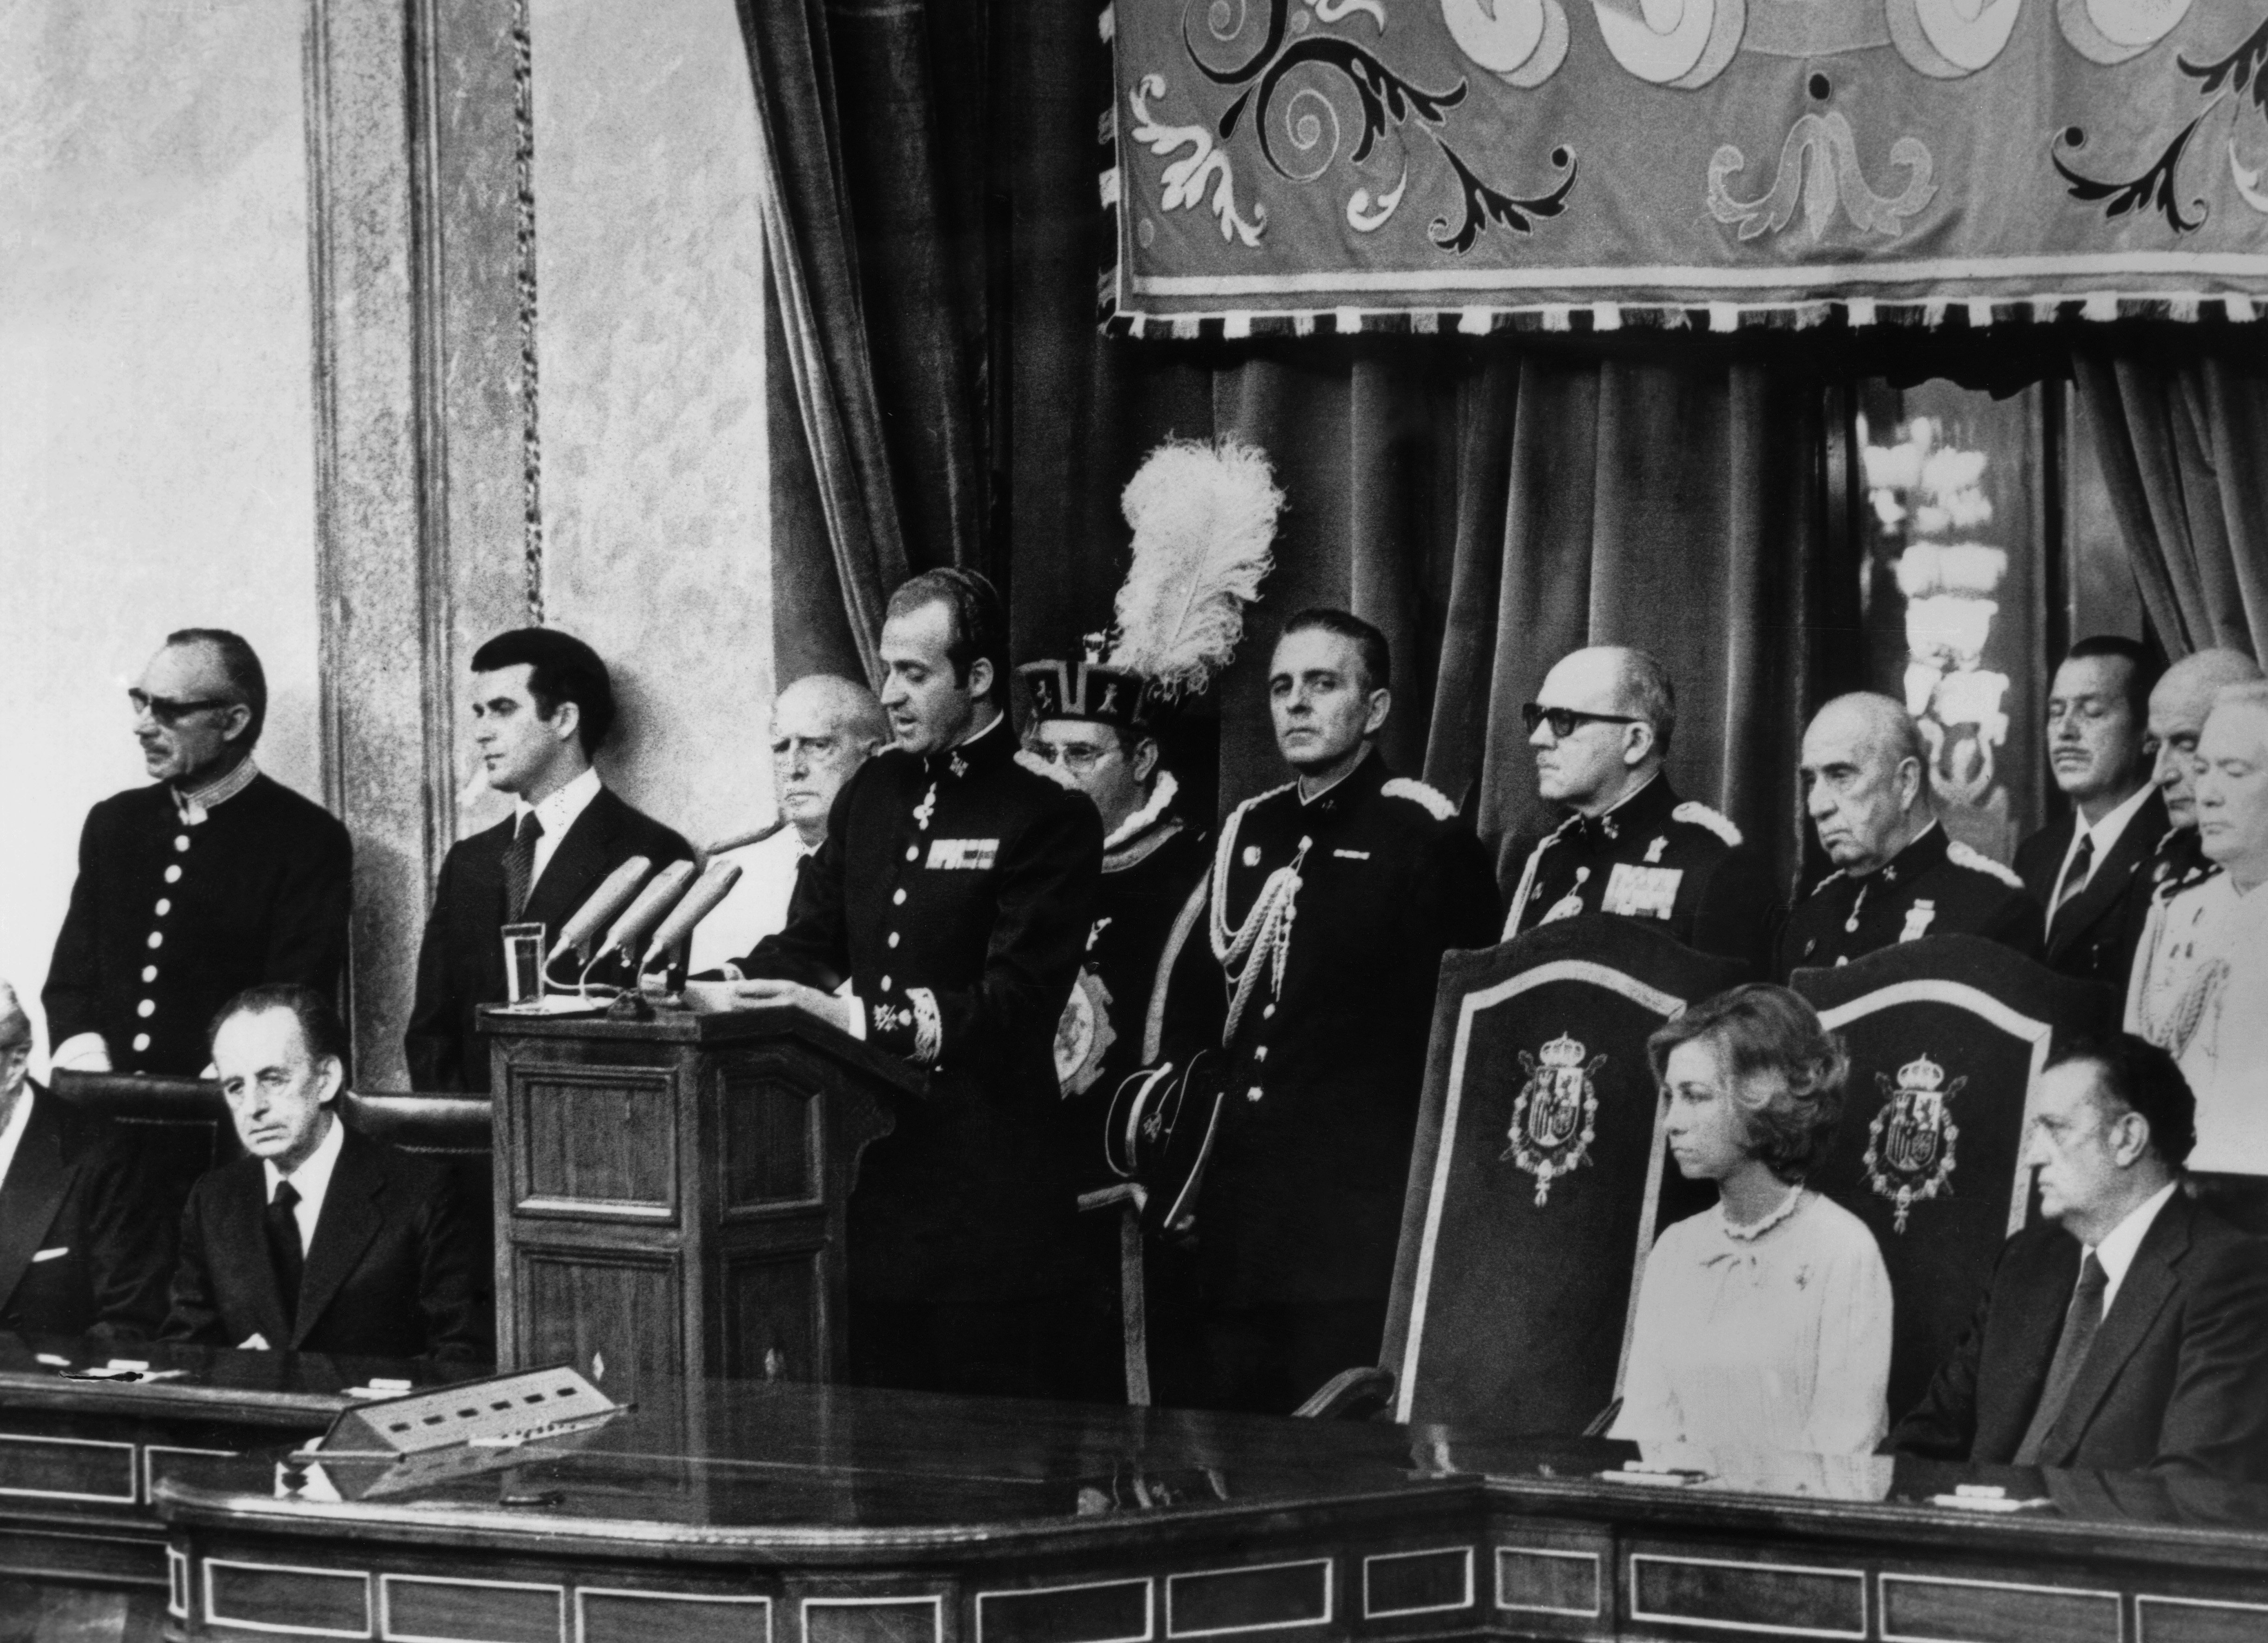 Le roi Juan Carlos Ier d'Espagne inaugurant les premières Cortès espagnoles démocratiquement élues, en présence de 800 députés et sénateurs et de son épouse la reine Sofia le 27 juillet 1977. / Source : Getty Images